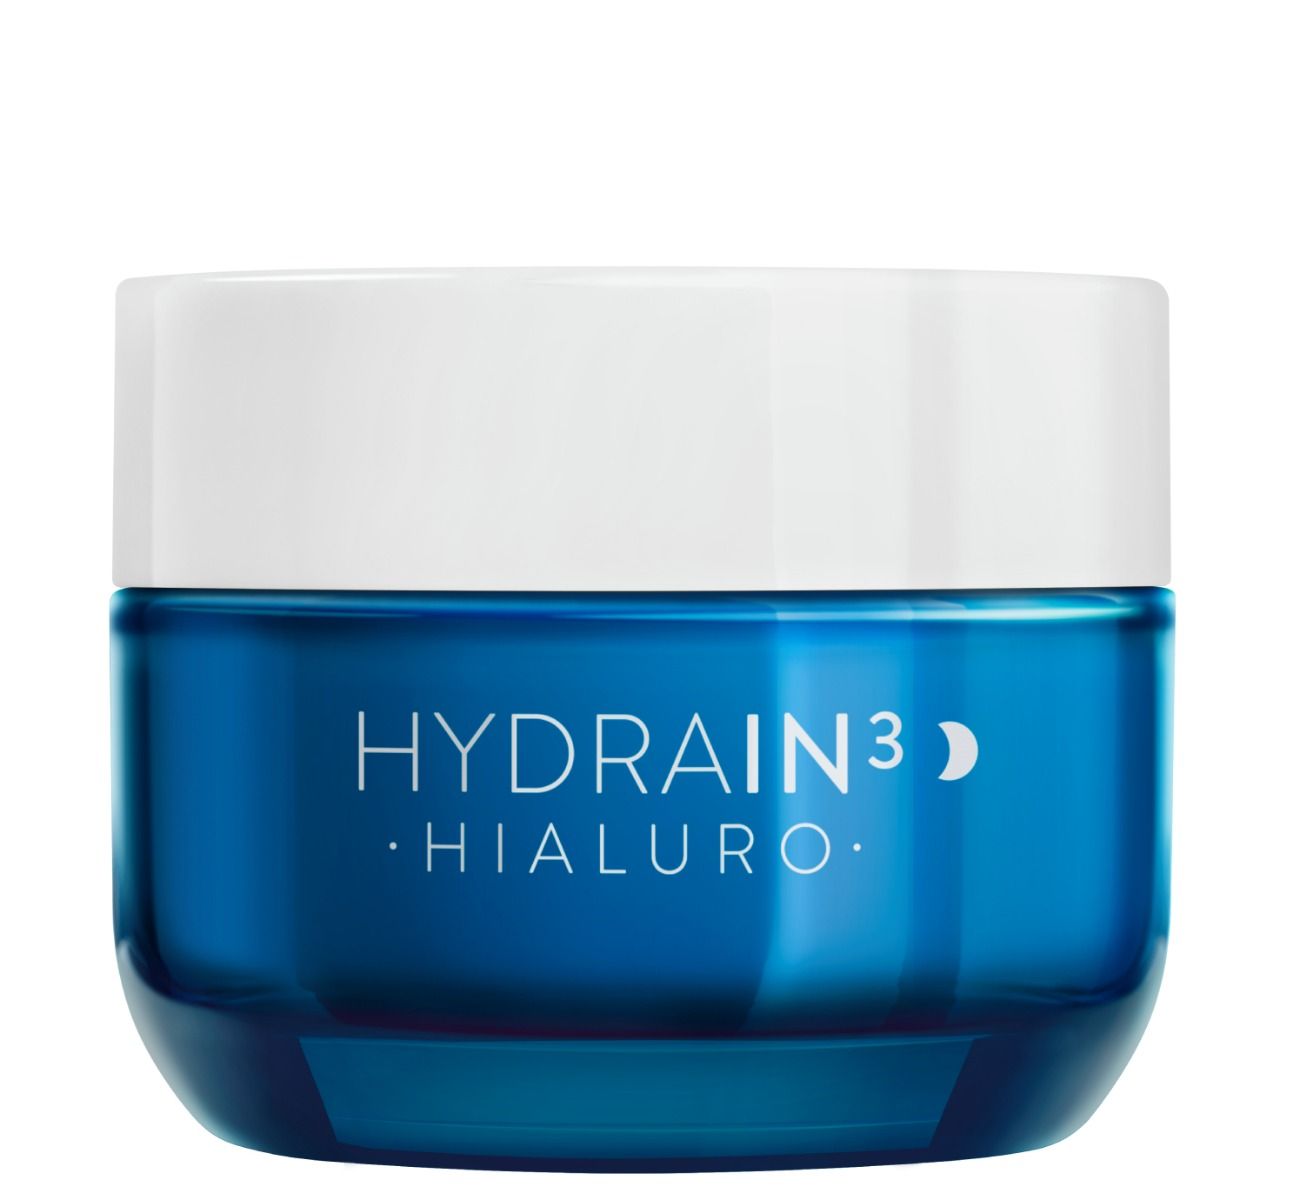 Dermedic Hydrain3 Hialuro крем для лица на ночь, 50 ml крем для кожи вокруг глаз dermedic hydrain3 hialuro 15 мл